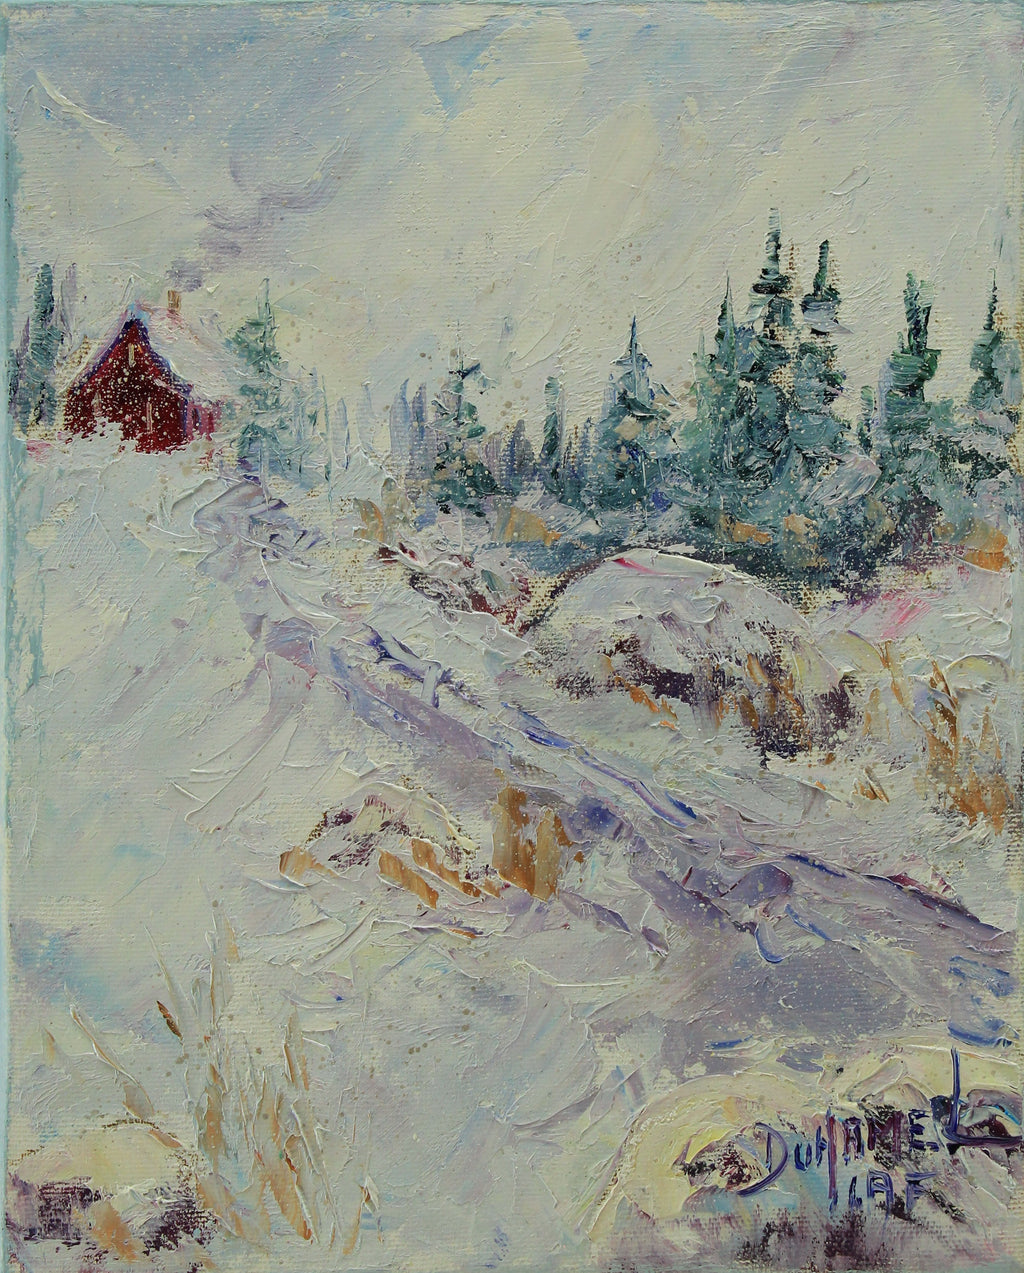 P. Duhamel, Vers la maison - Oil on canvas 10x8x1.5